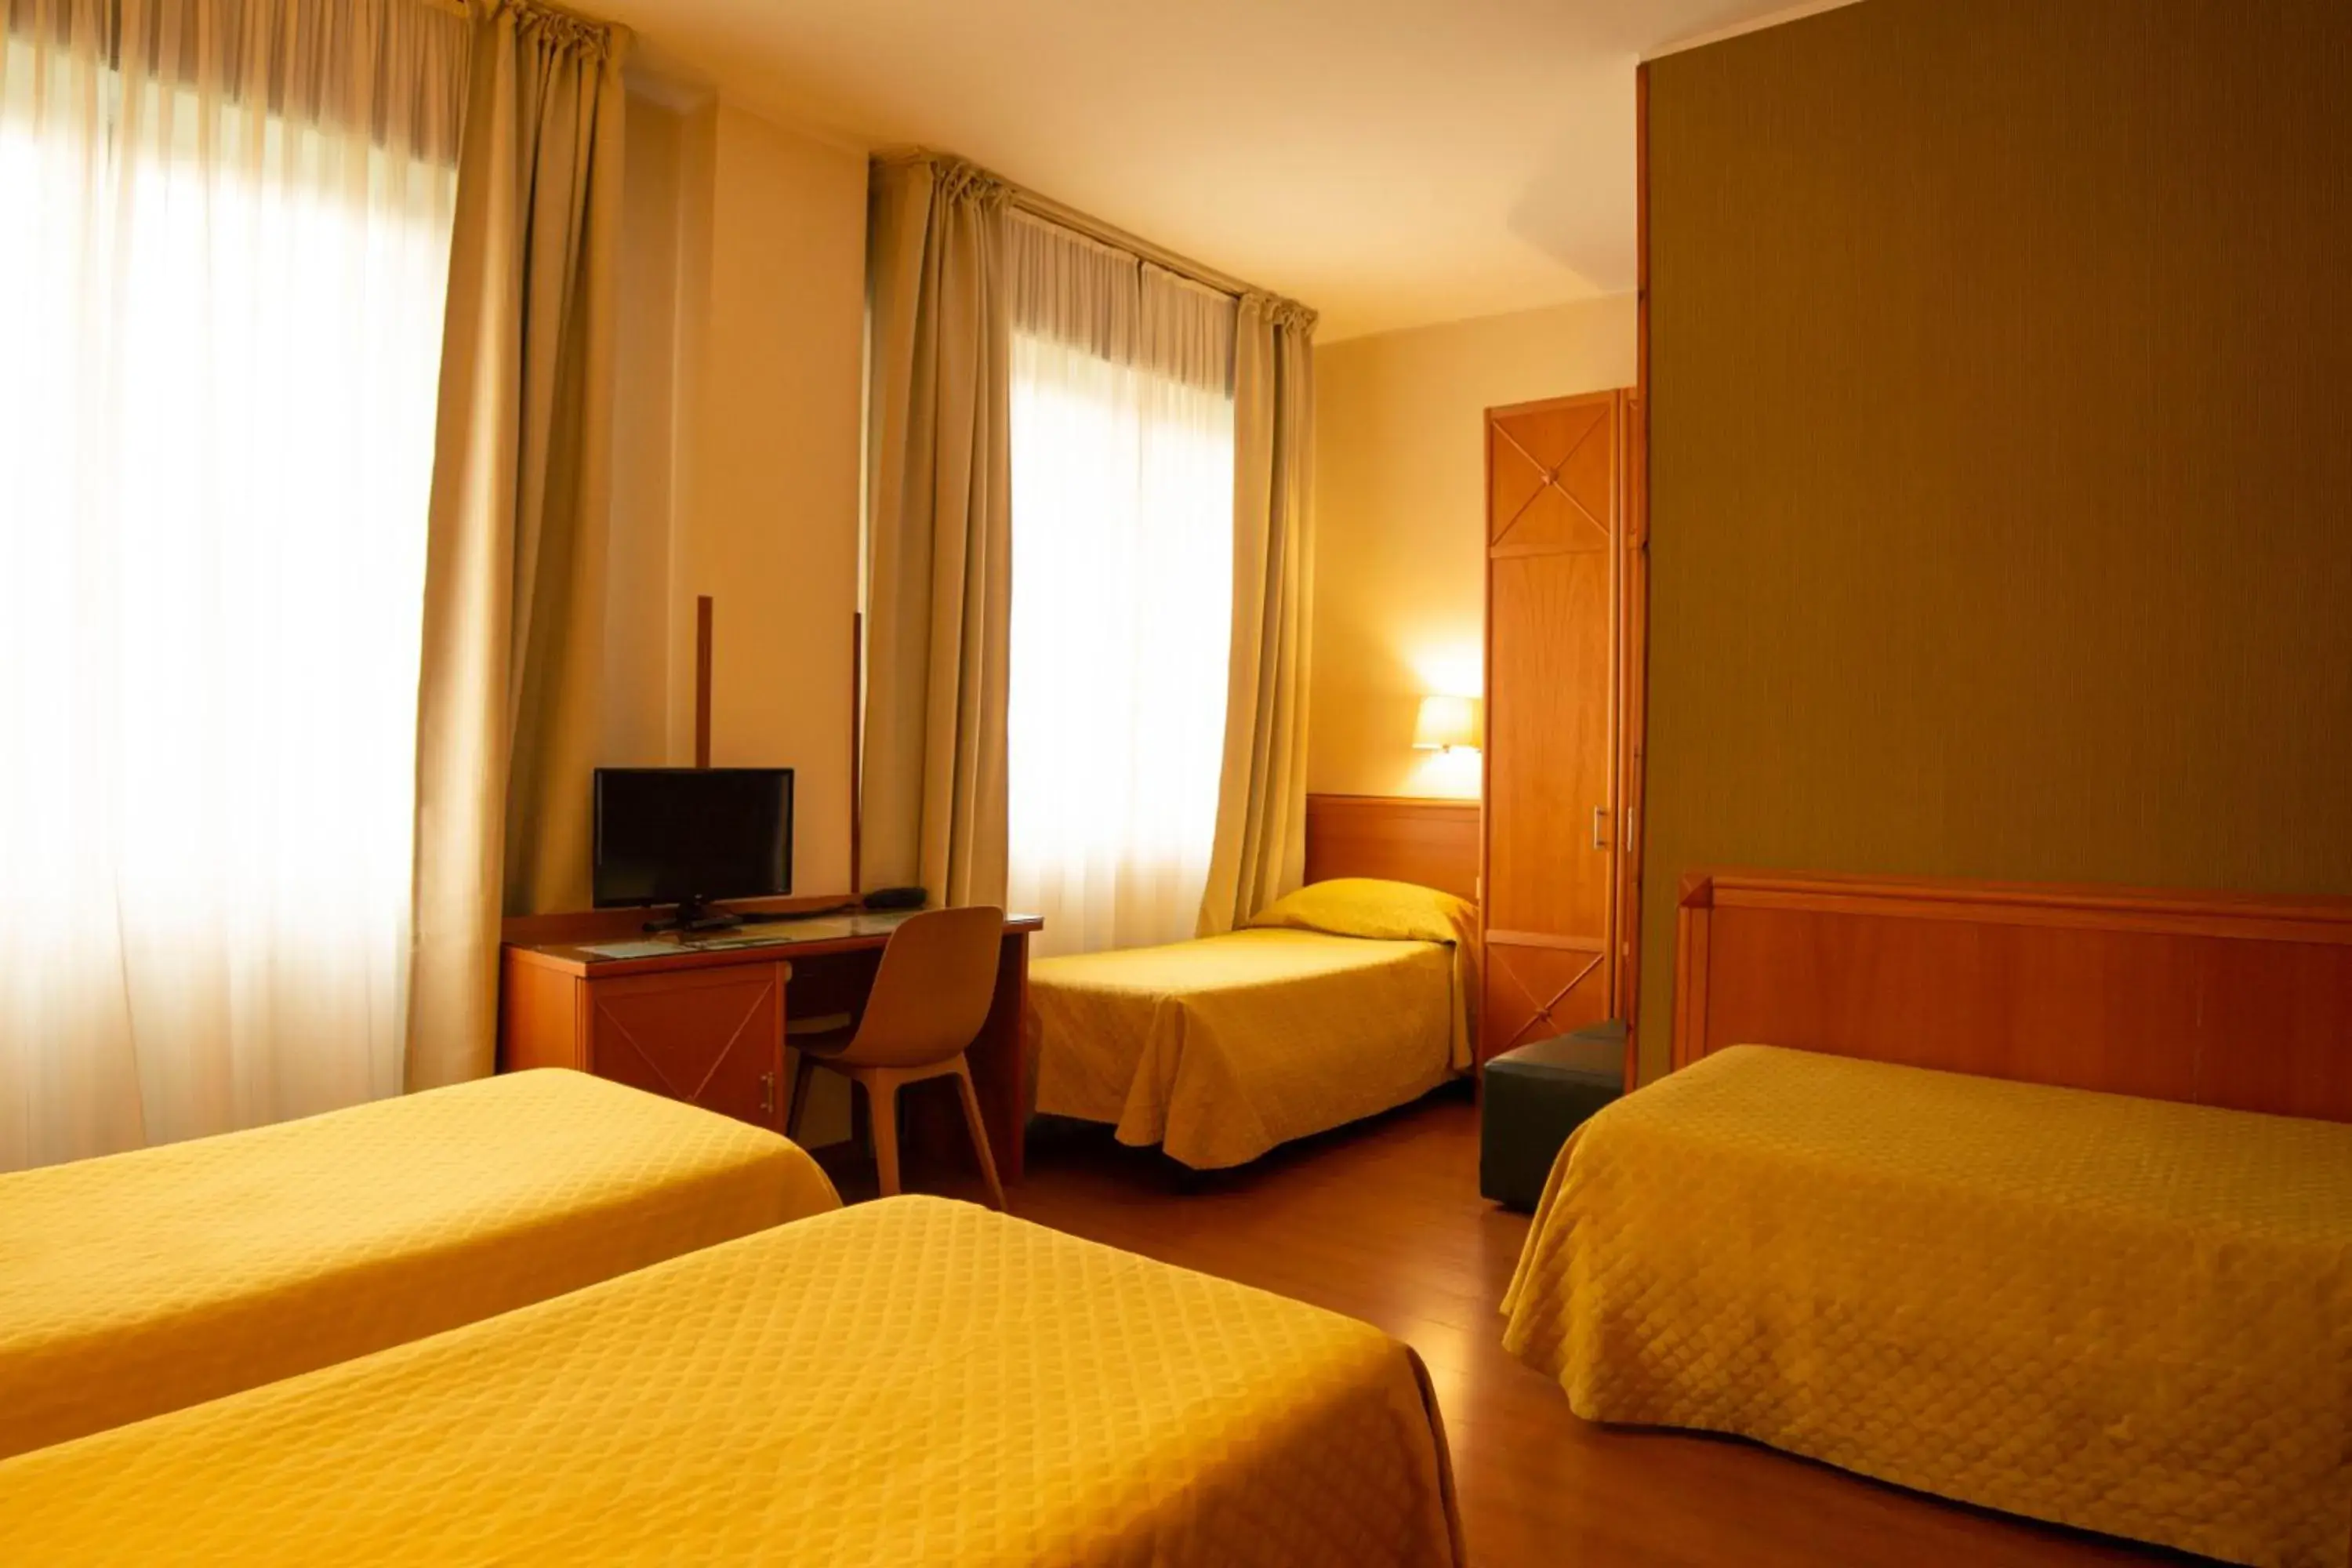 Bed in eco Hotel Milano & BioRiso Restaurant